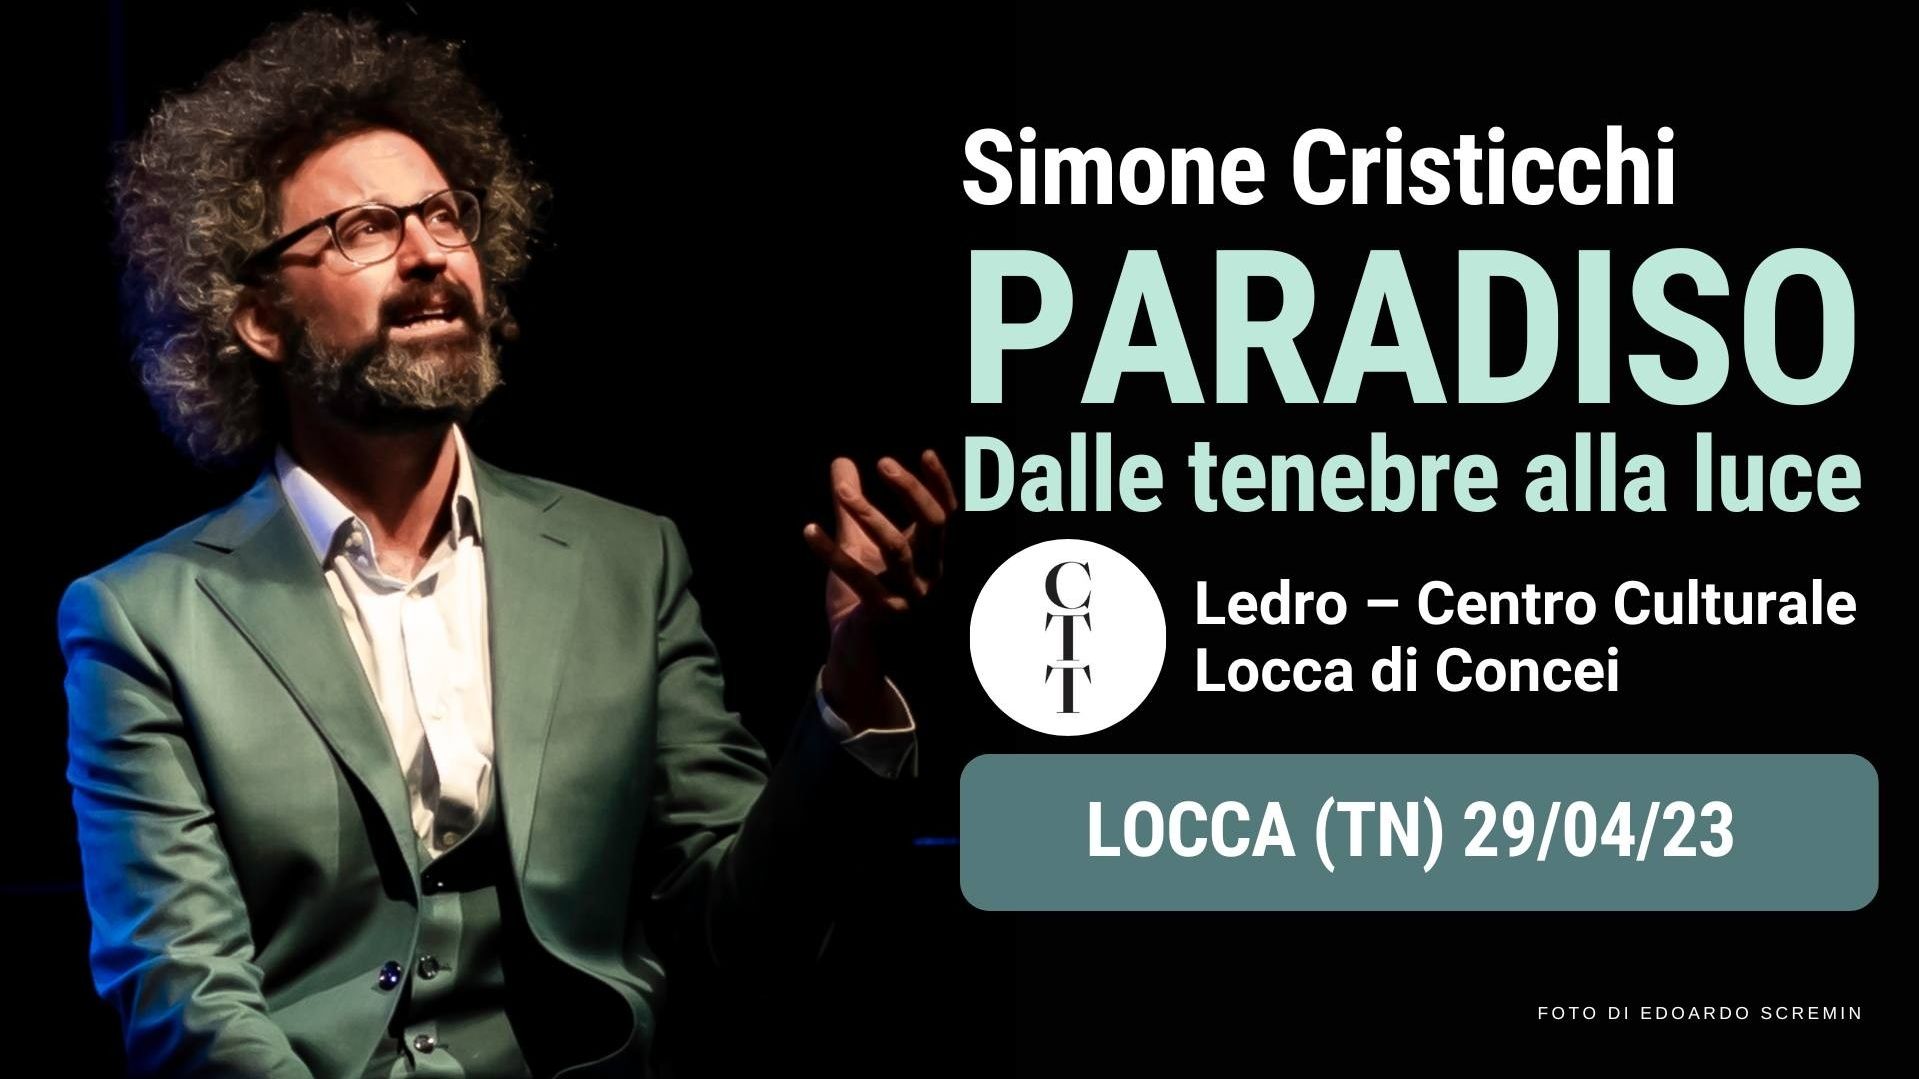 Simone Cristicchi - "Paradiso Dalle Tenebre Alla Luce"